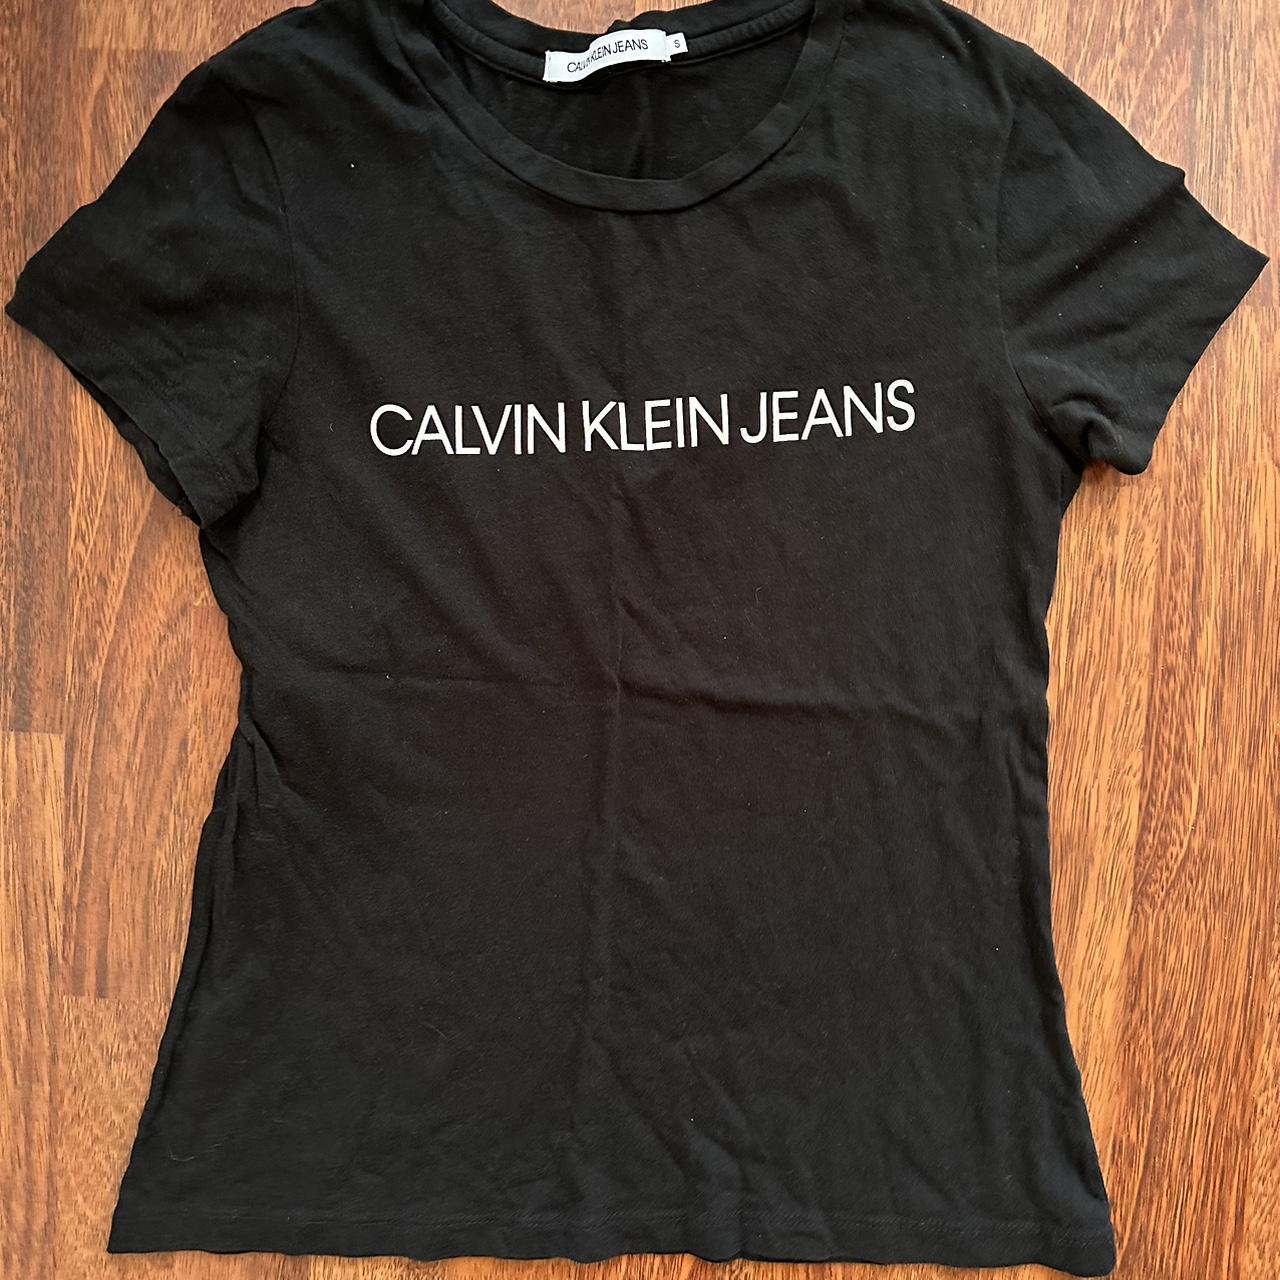 Calvin Klein Women’s tshirts - white is in XS -... - Depop